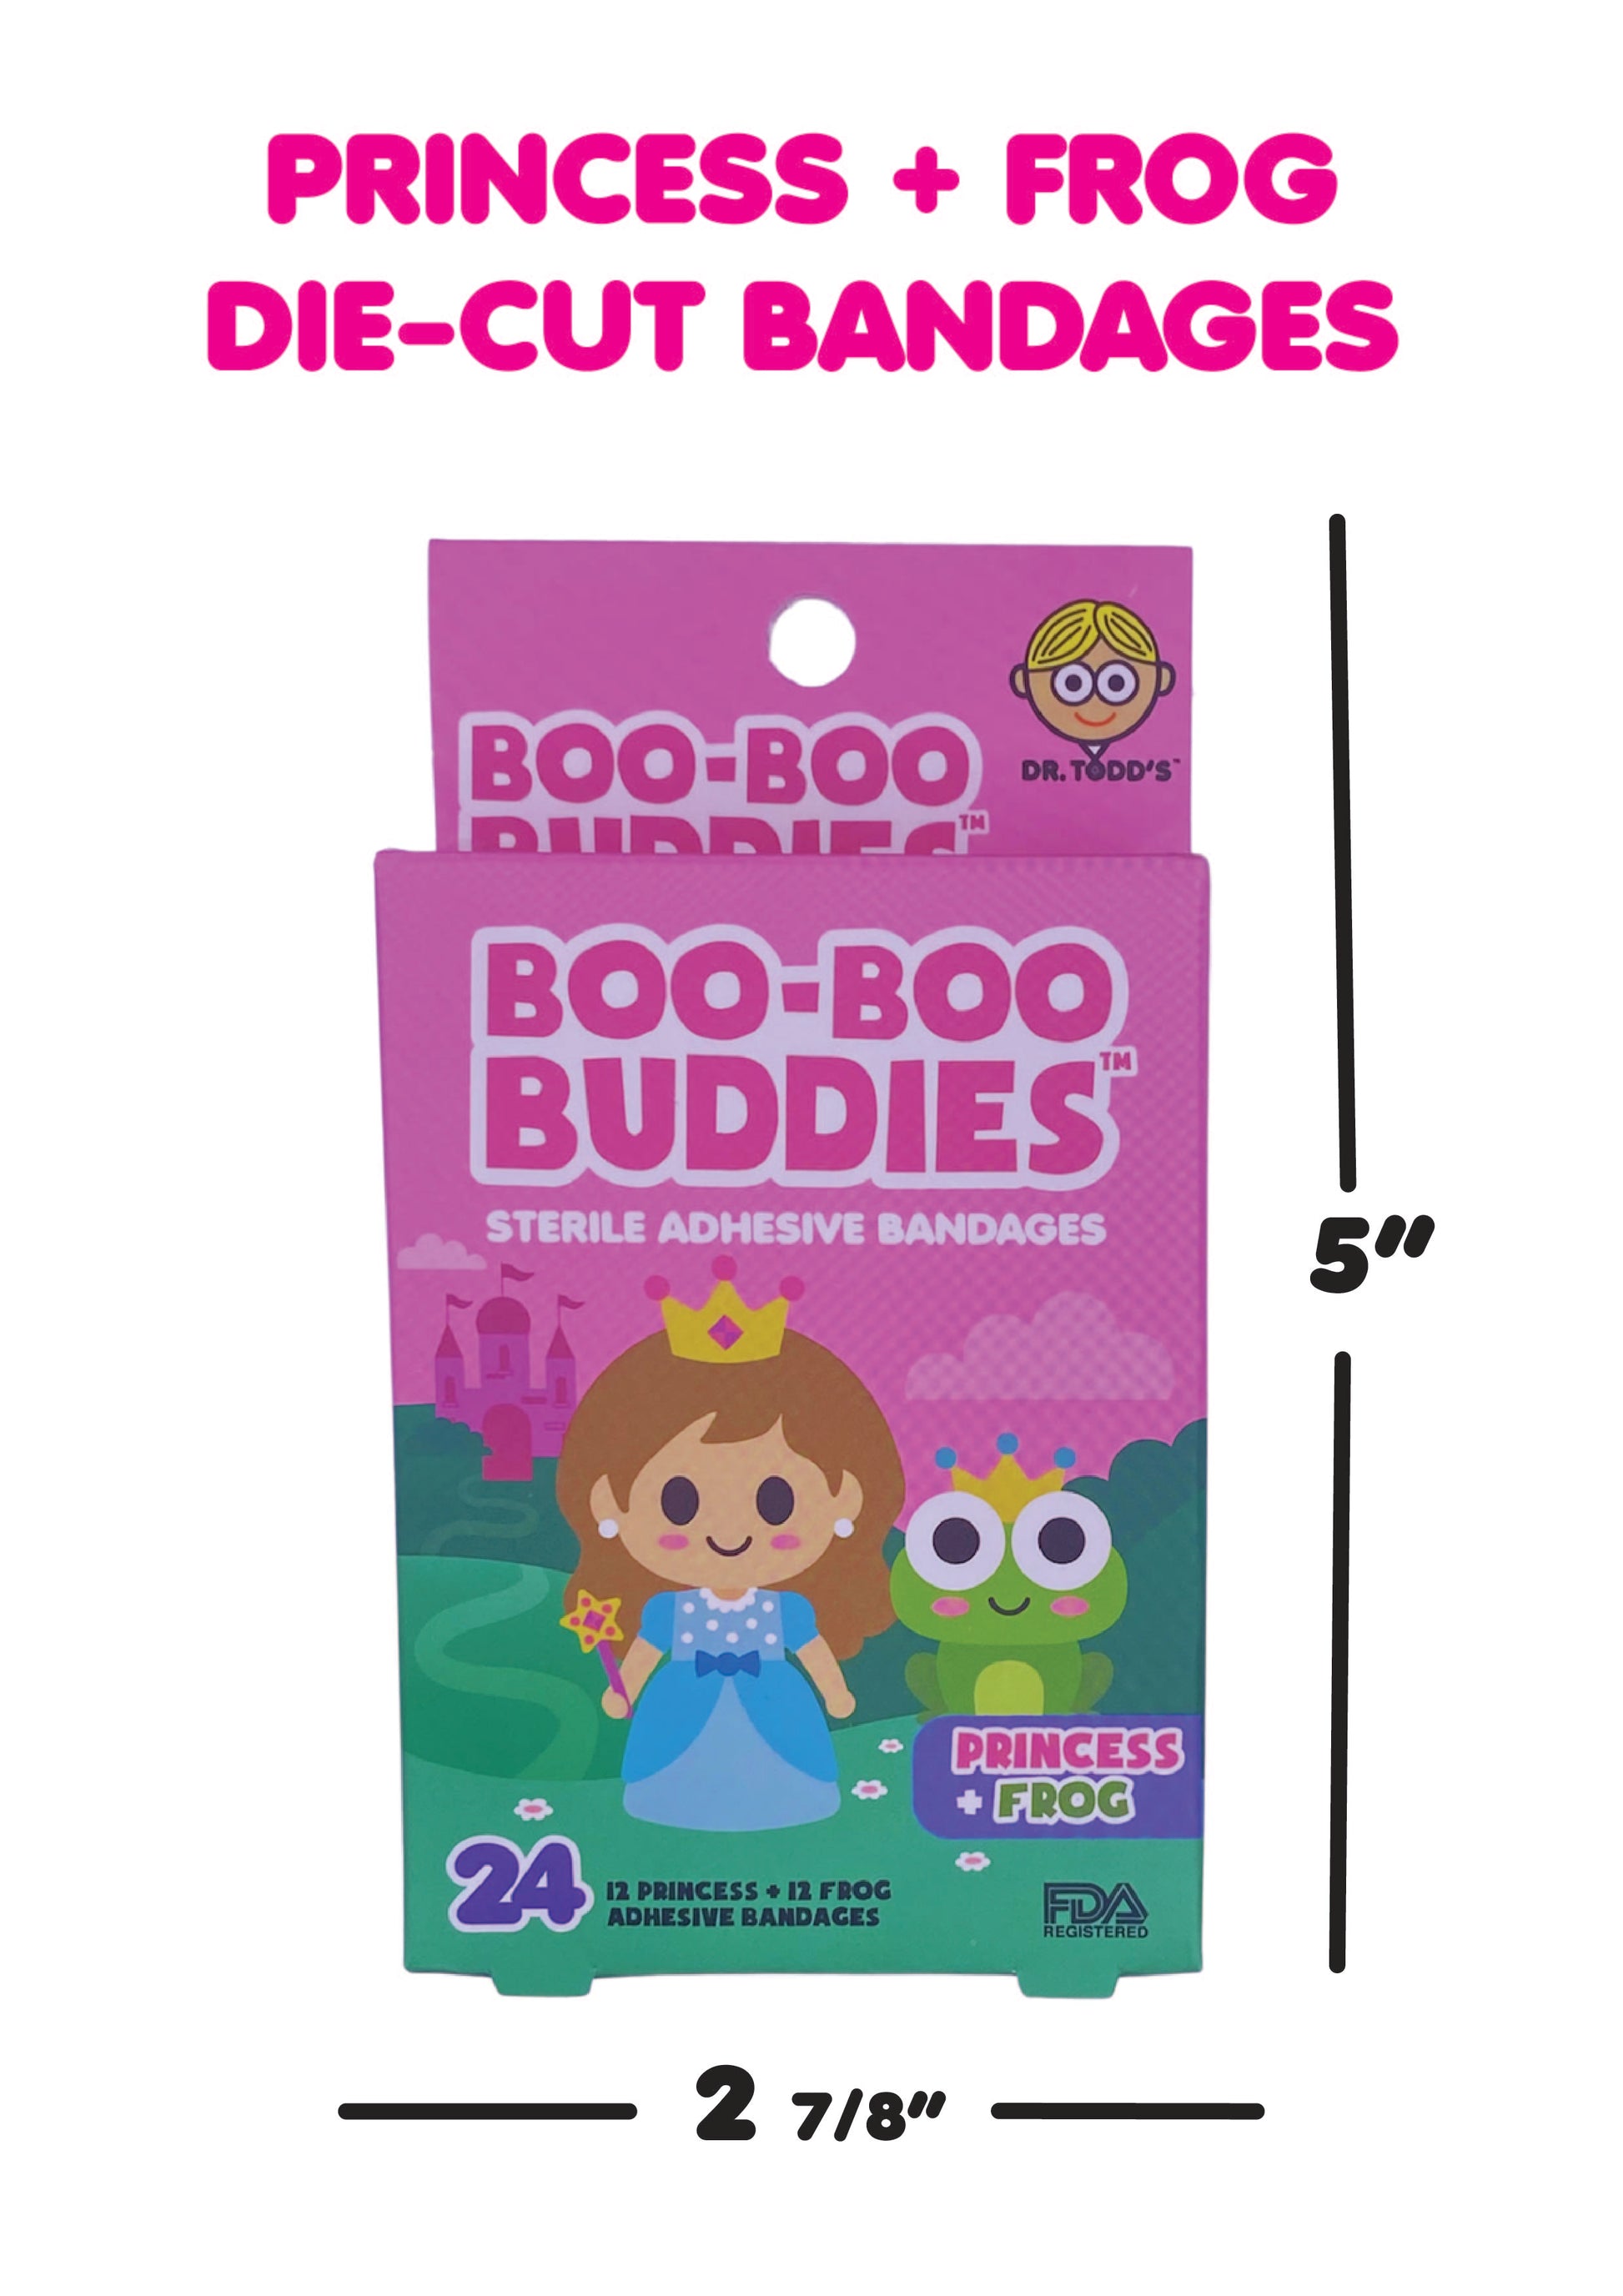 Boo Boo Buddies Bandages - Princess and Frog - box dimensions